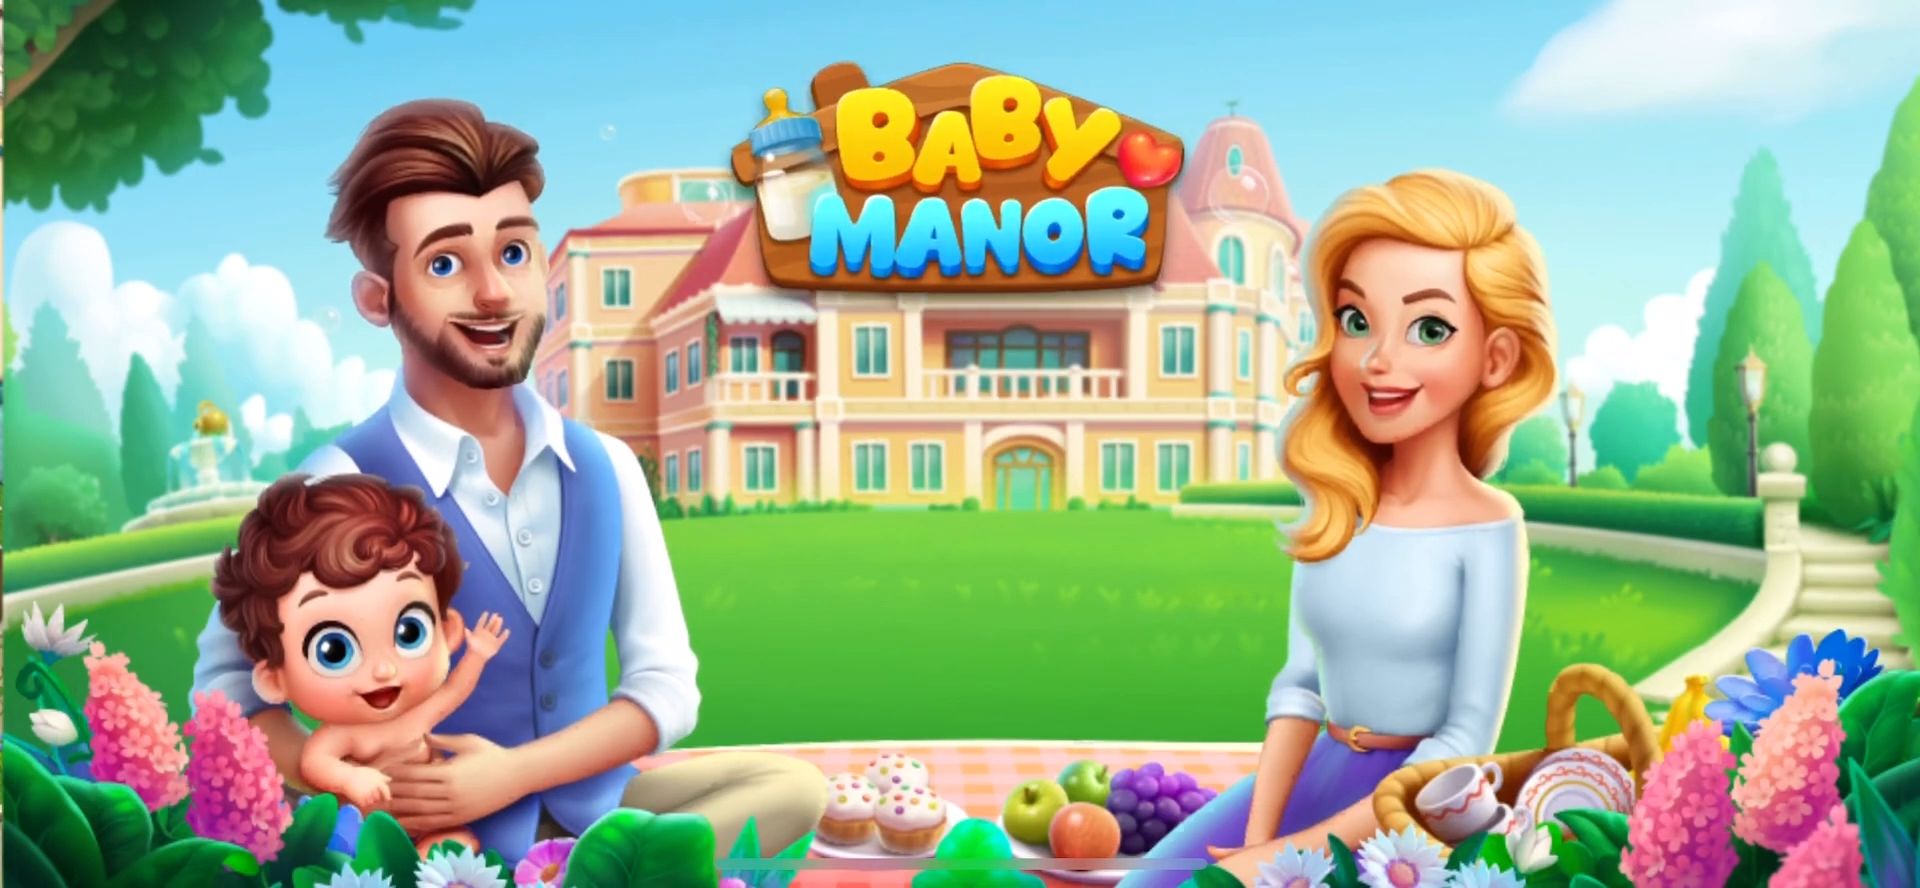 Baby Manor: Baby Raising Simulation & Home Design screenshot 1